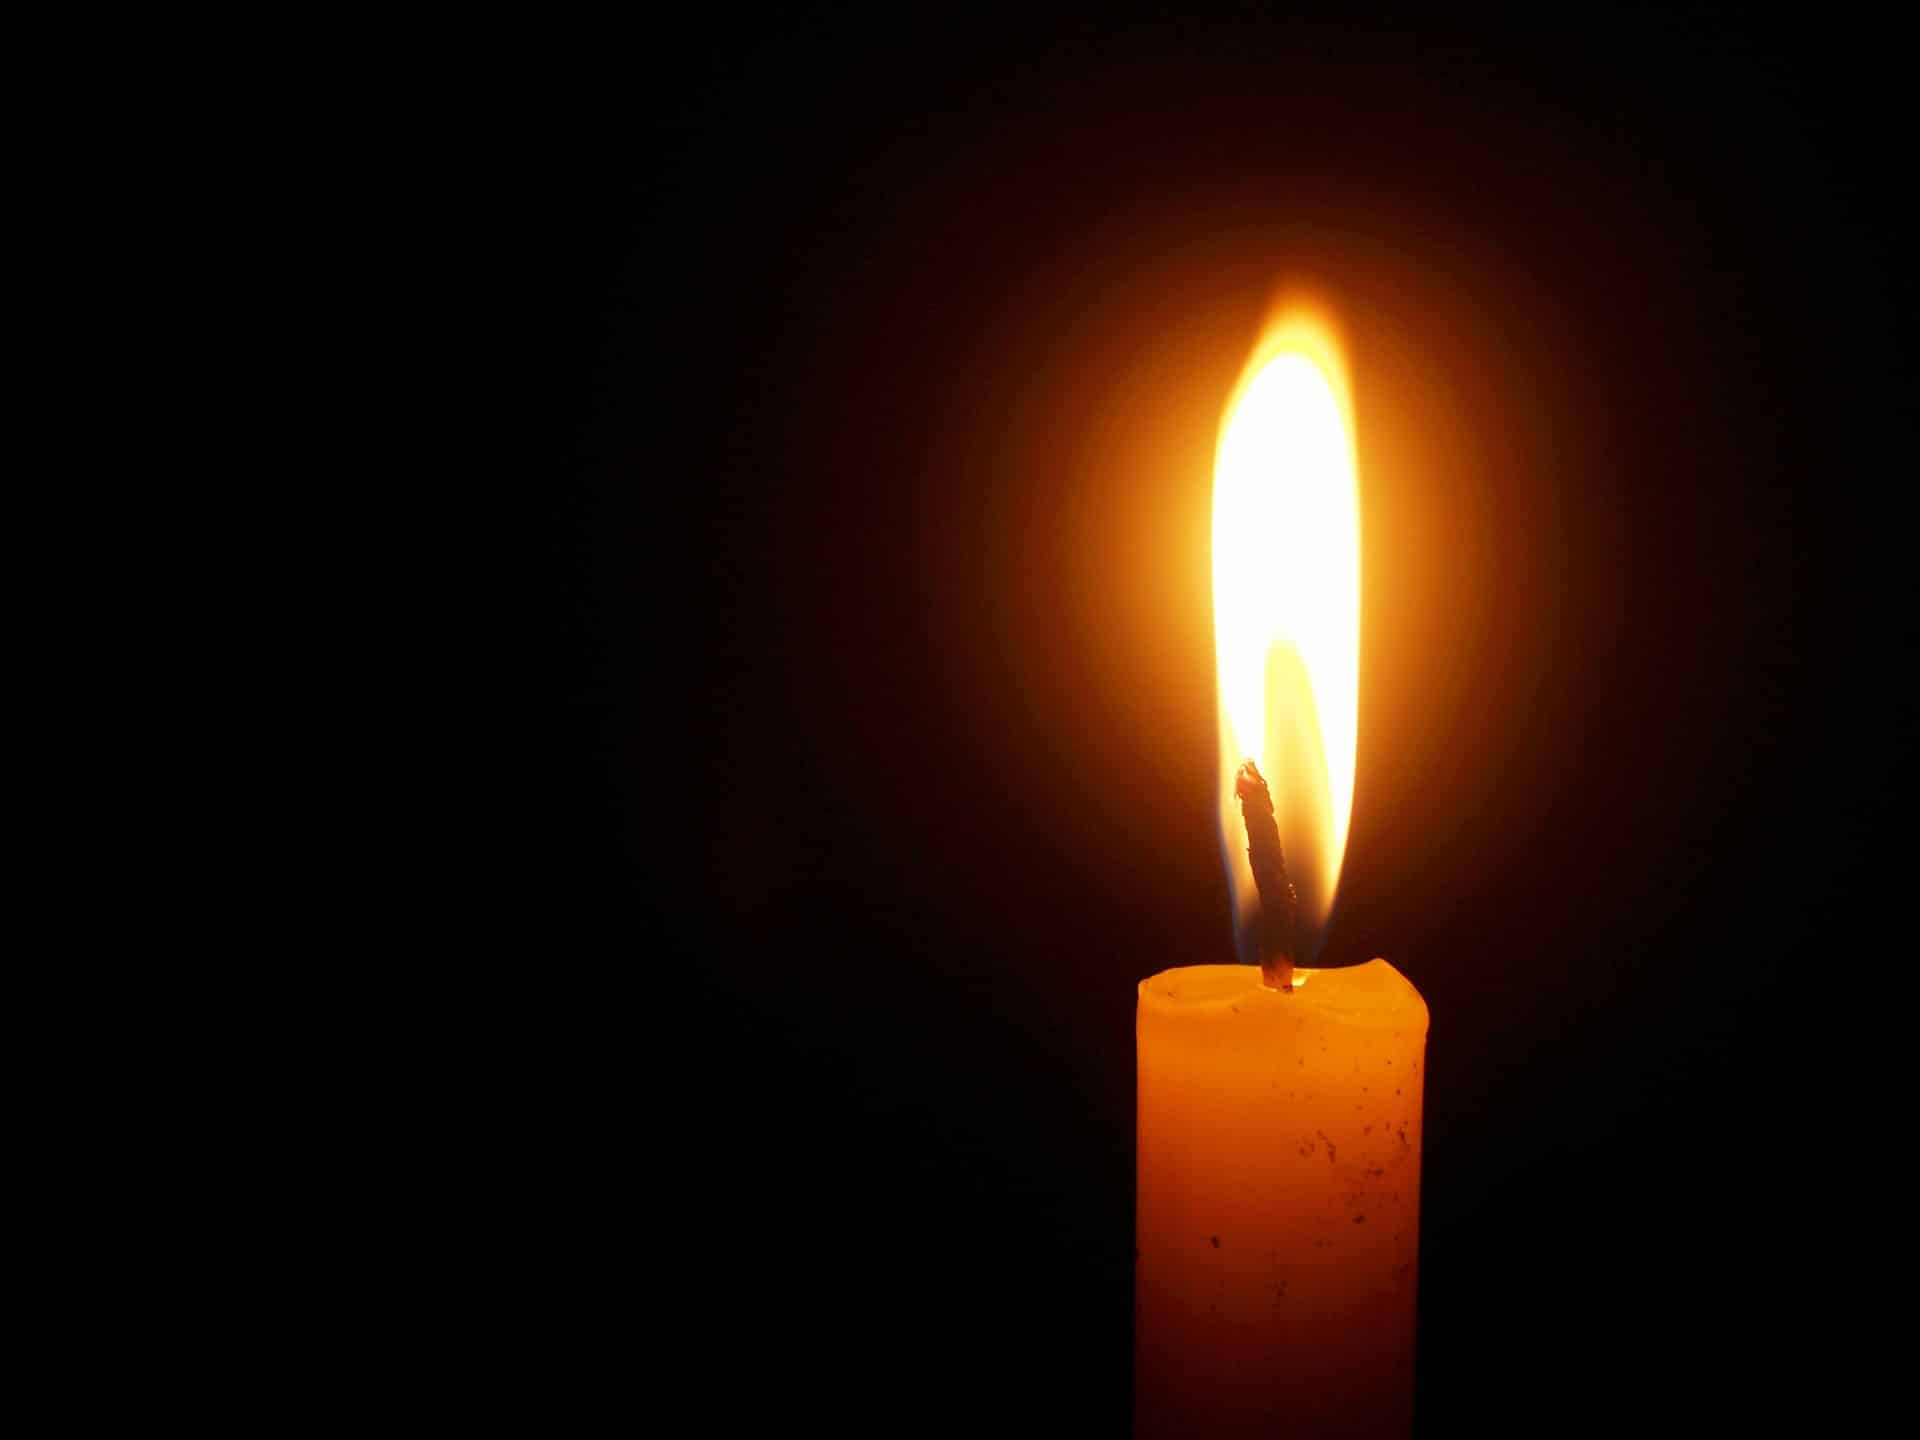 Έφυγε από την ζωή ο Τριαντάφυλλος Φώτης σε ηλικία 77 ετών – Η κηδεία θα τελεστεί σήμερα Τετάρτη 15 Νοεμβρίου